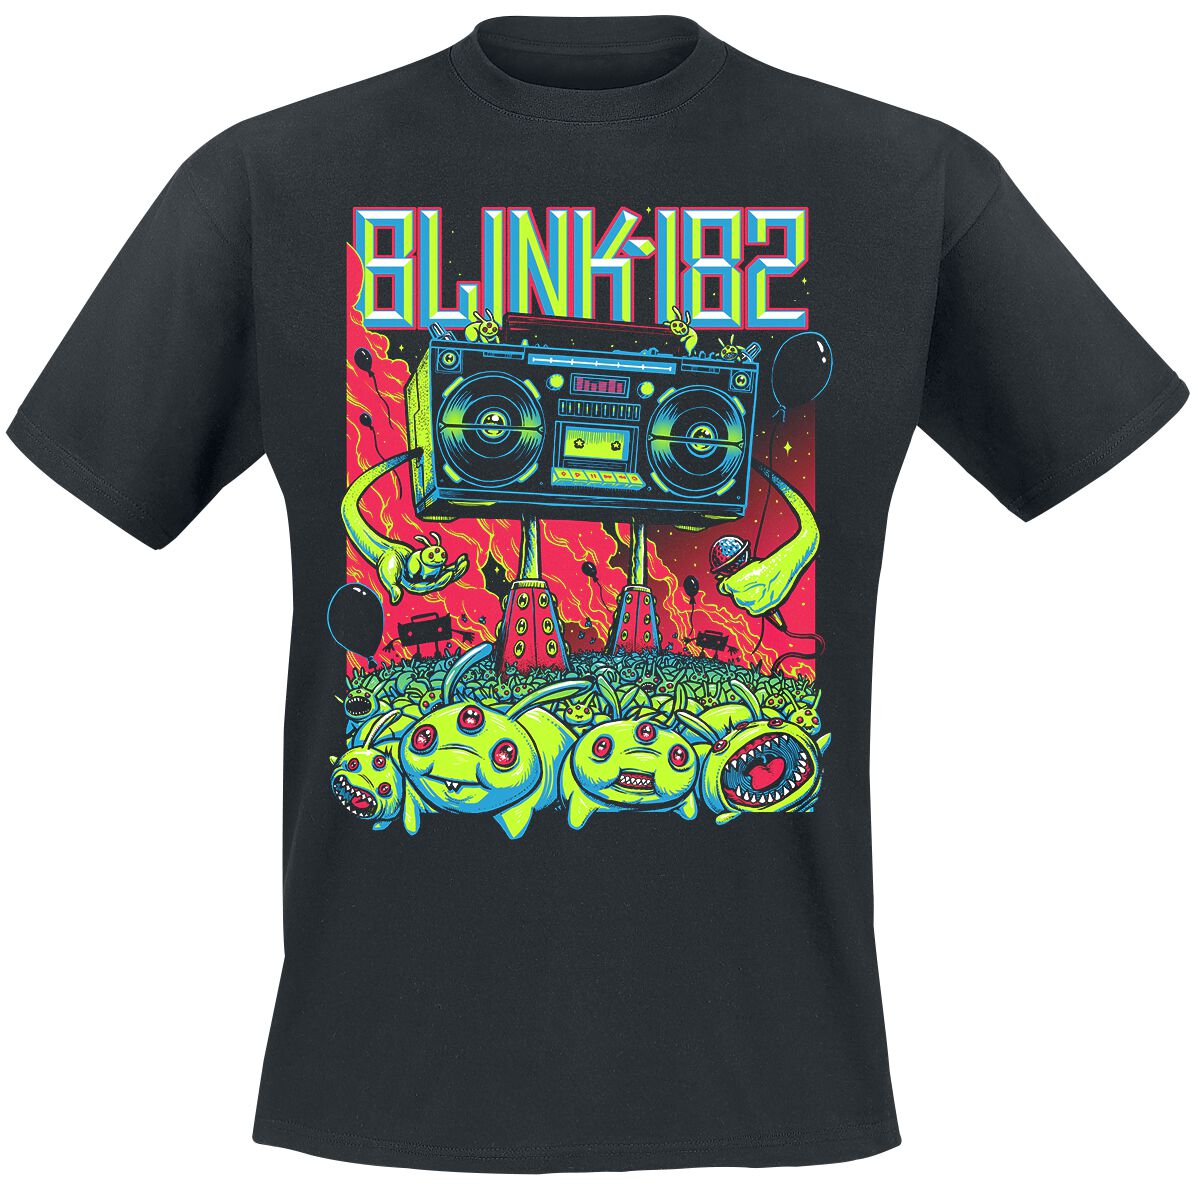 Blink-182 T-Shirt - Superboom - S bis 3XL - für Männer - Größe L - schwarz  - Lizenziertes Merchandise!